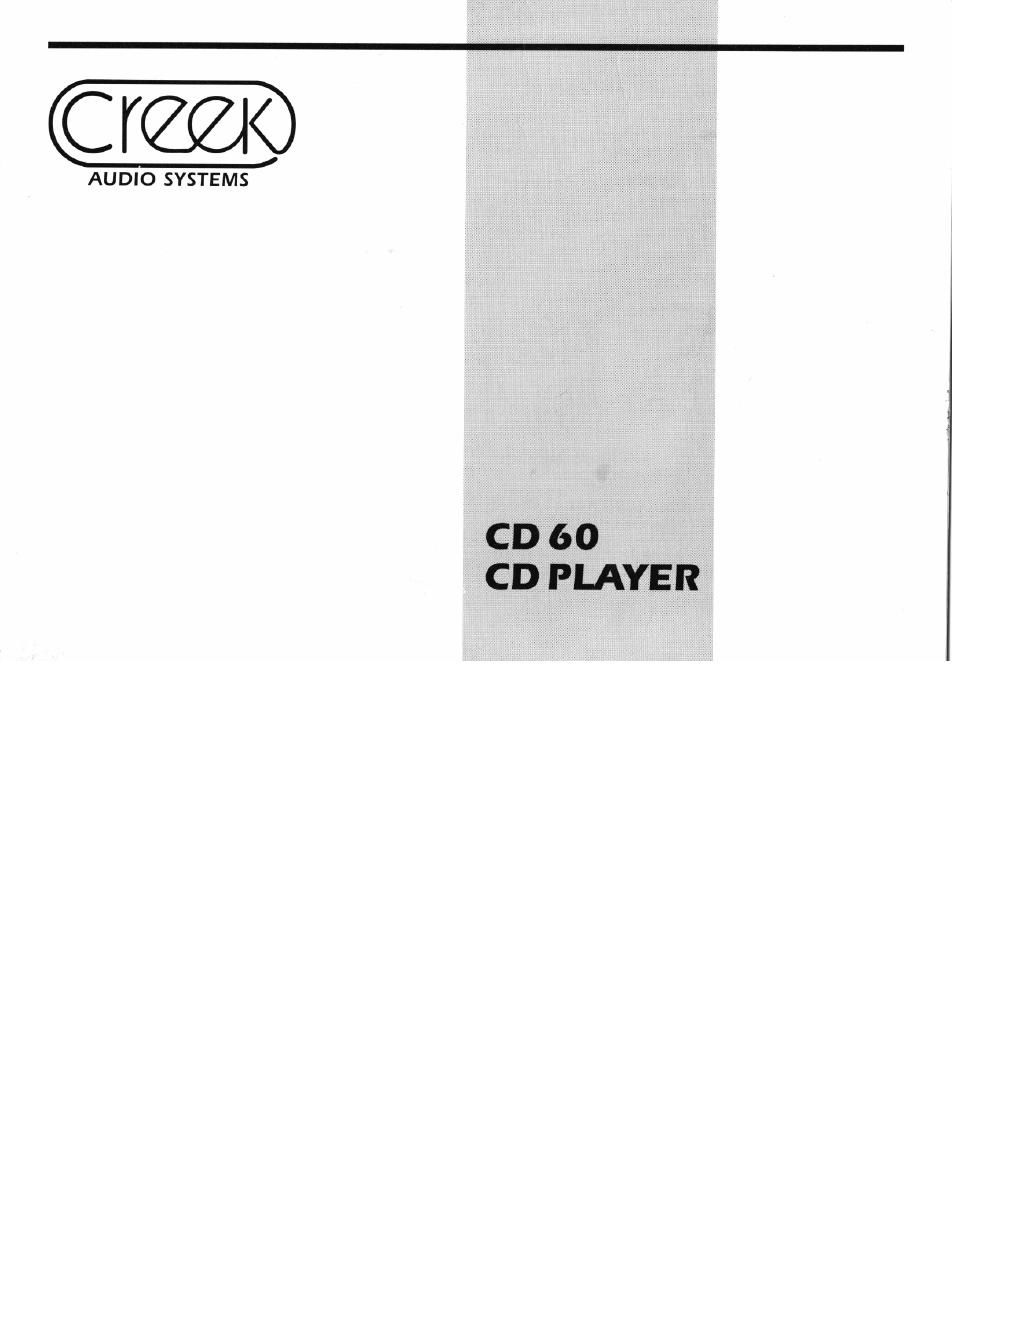 creek cd 60 owners manual